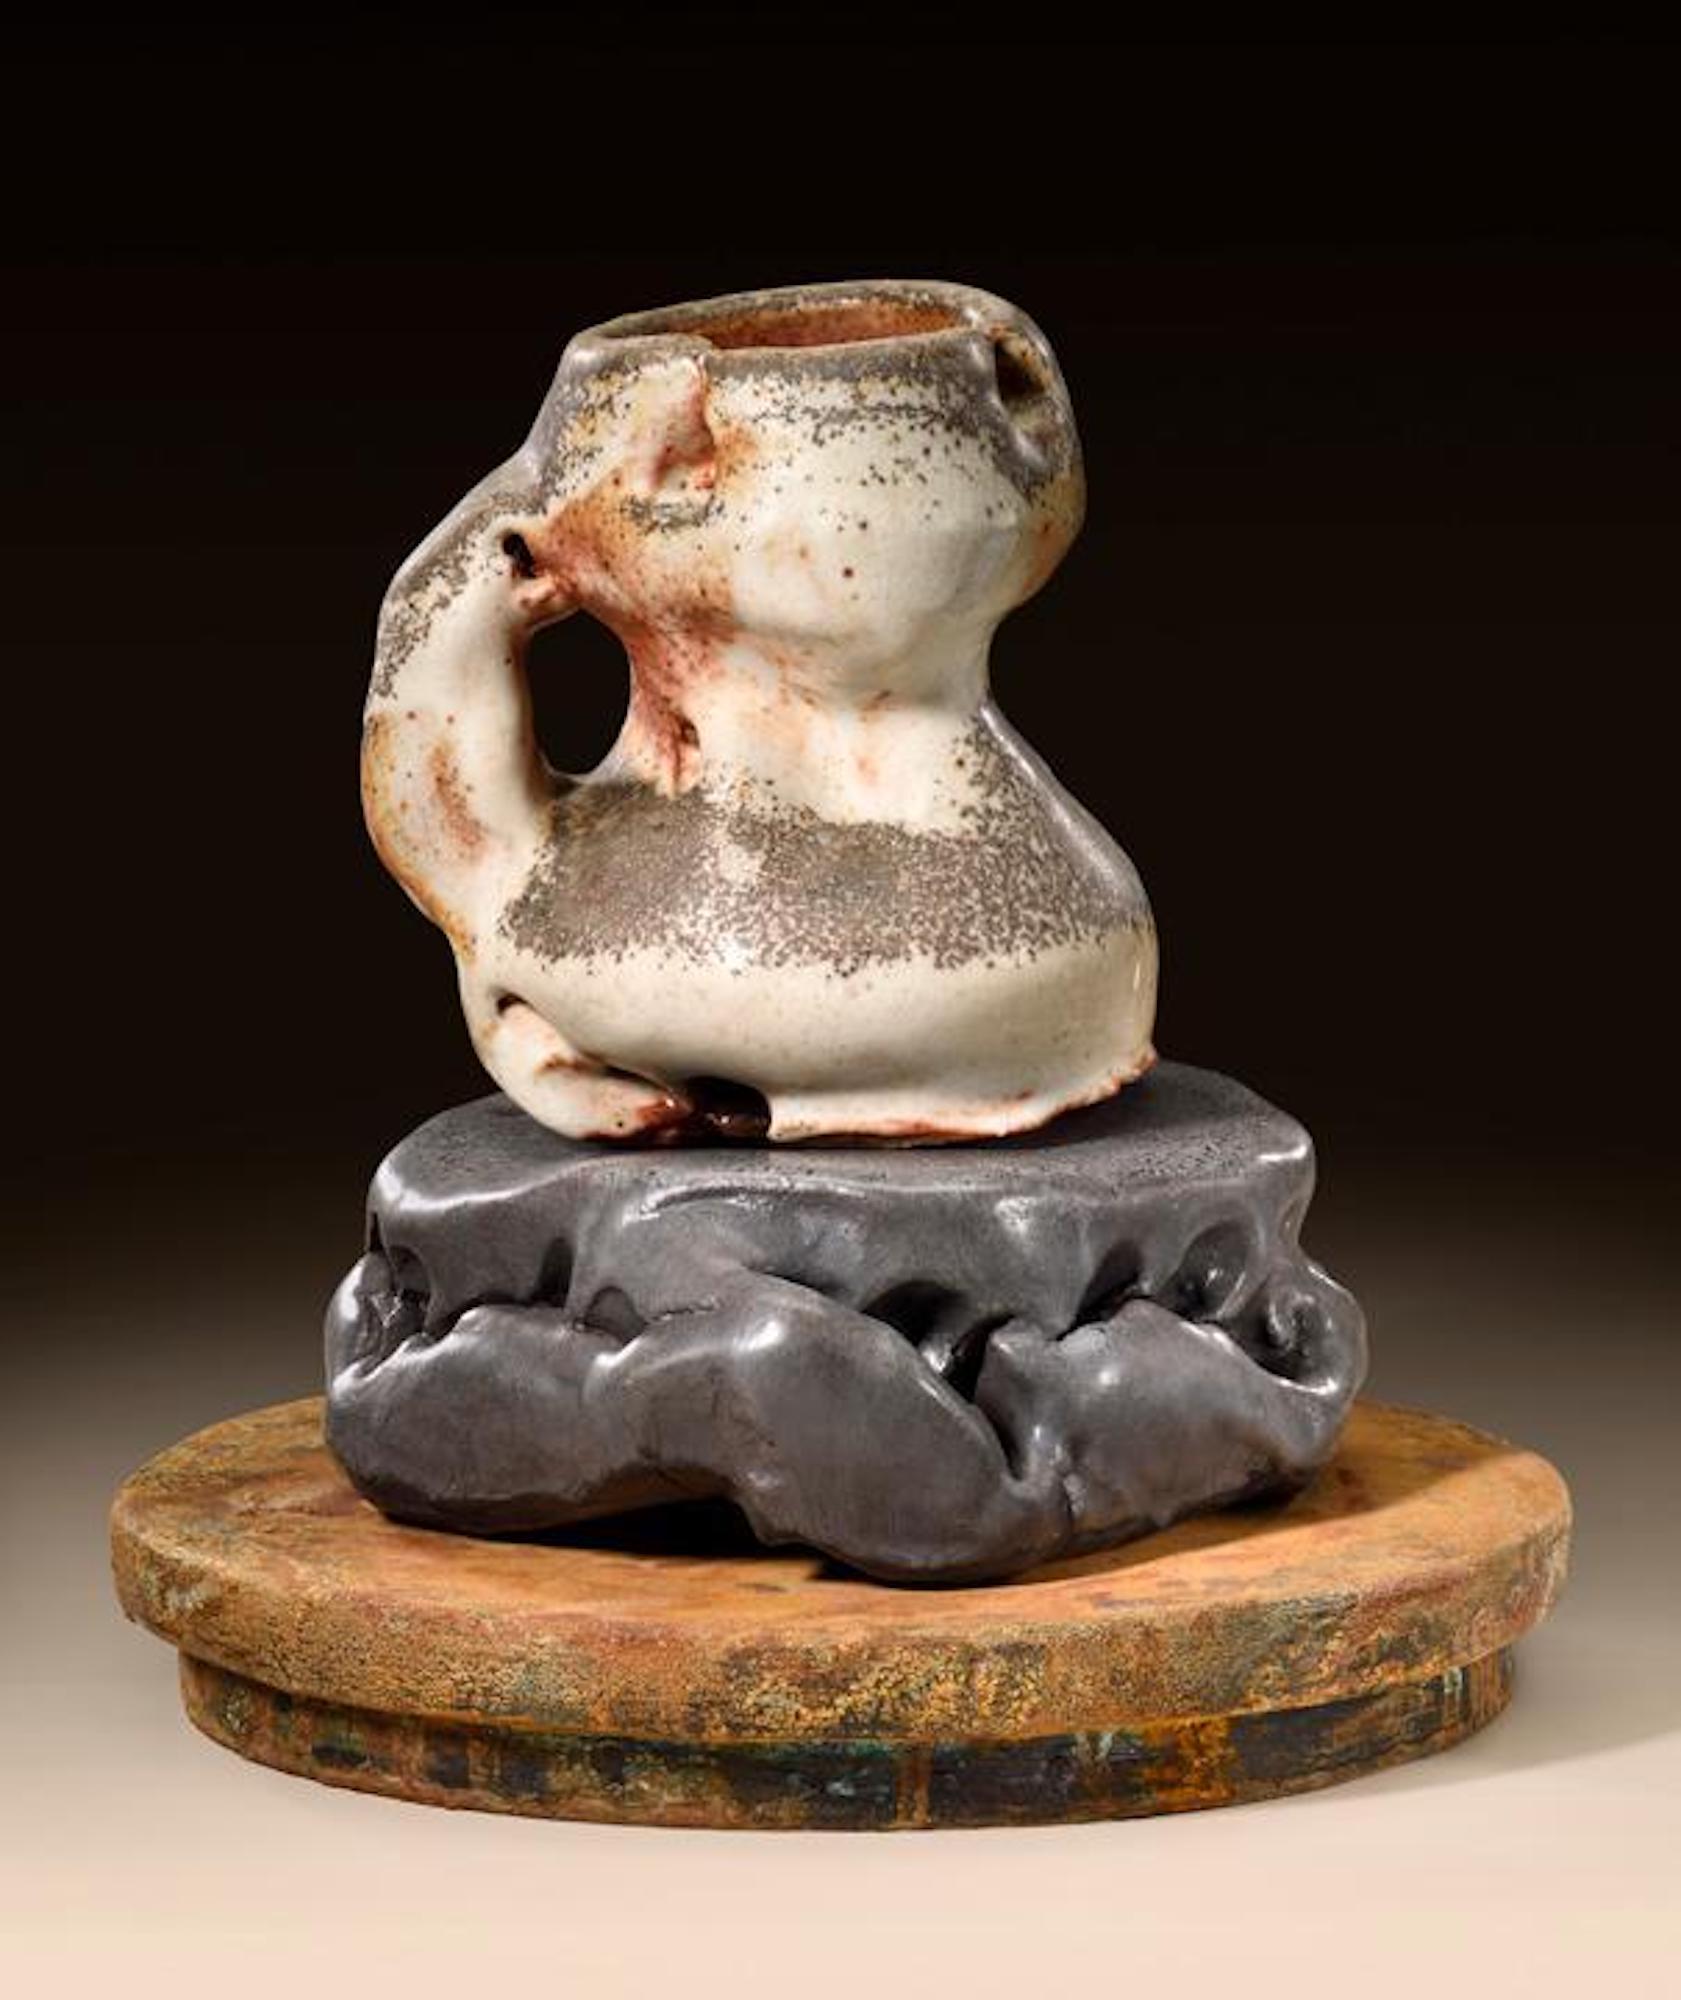 Modern Richard Hirsch Ceramic Scholar Rock Cup Sculpture #16, 2016 For Sale